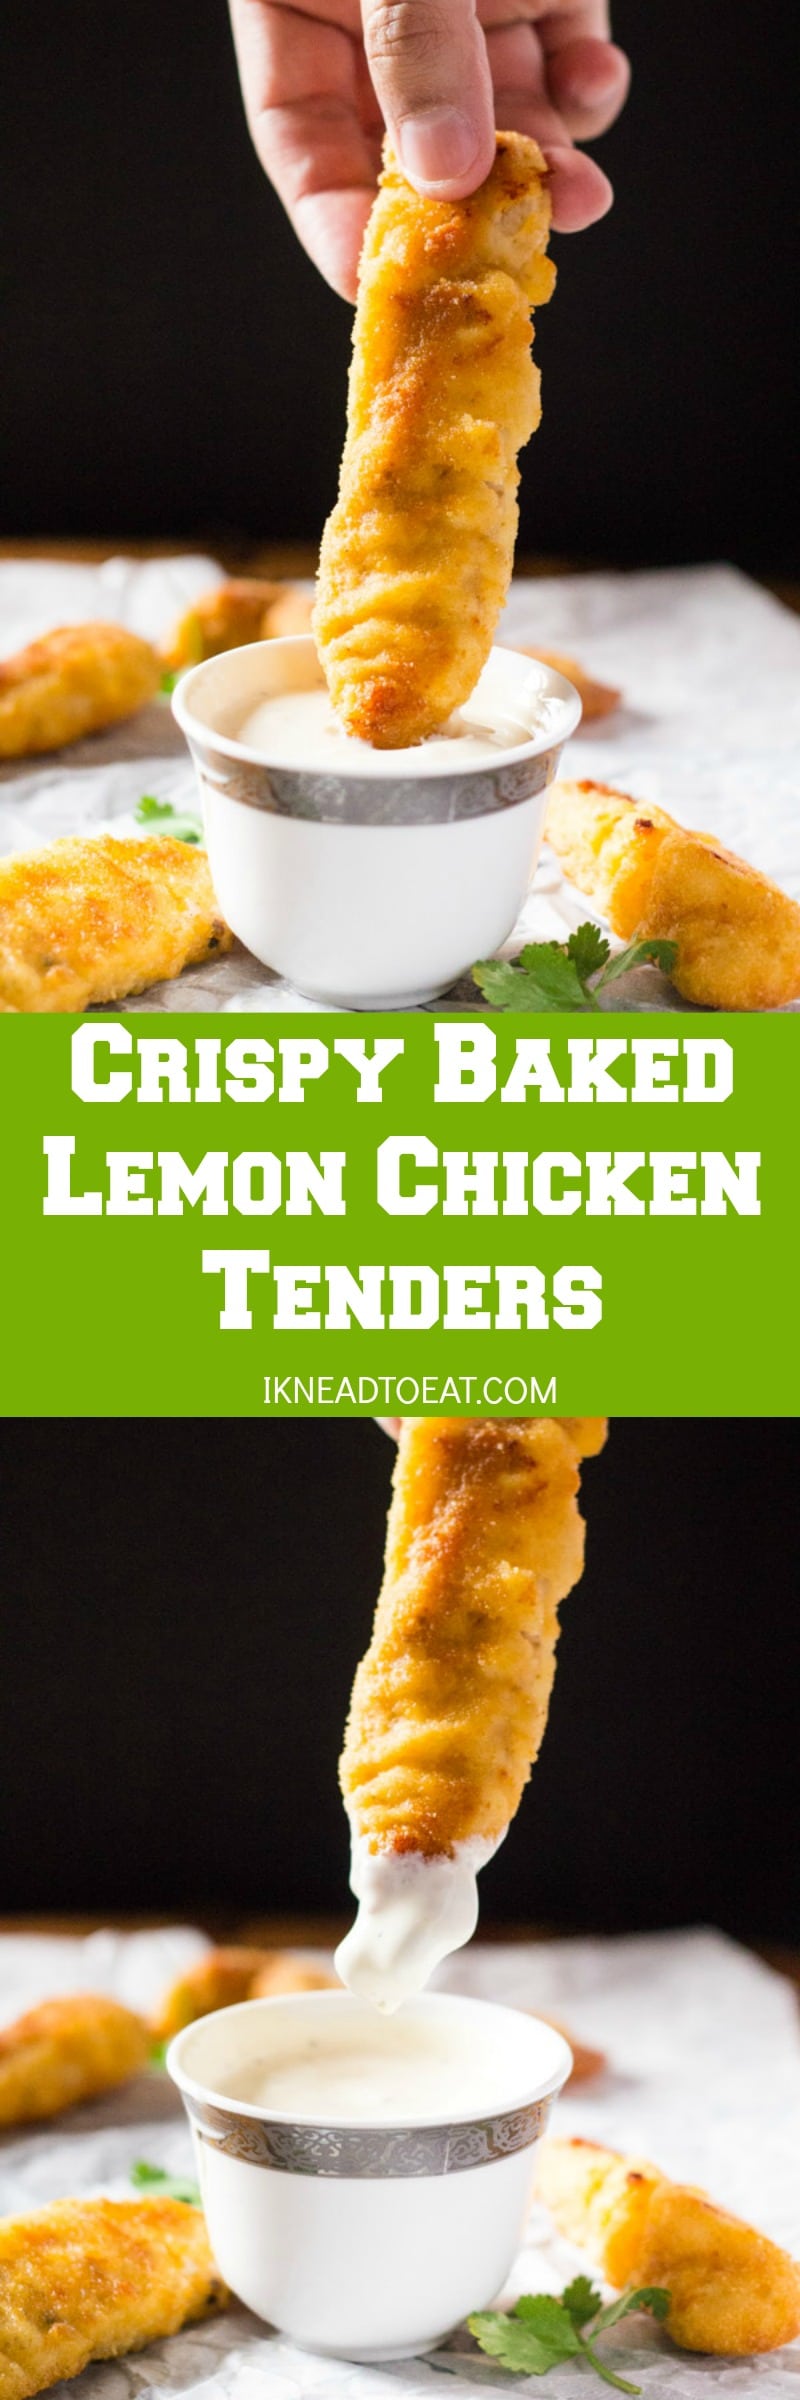 Crispy Baked Lemon Chicken Tenders